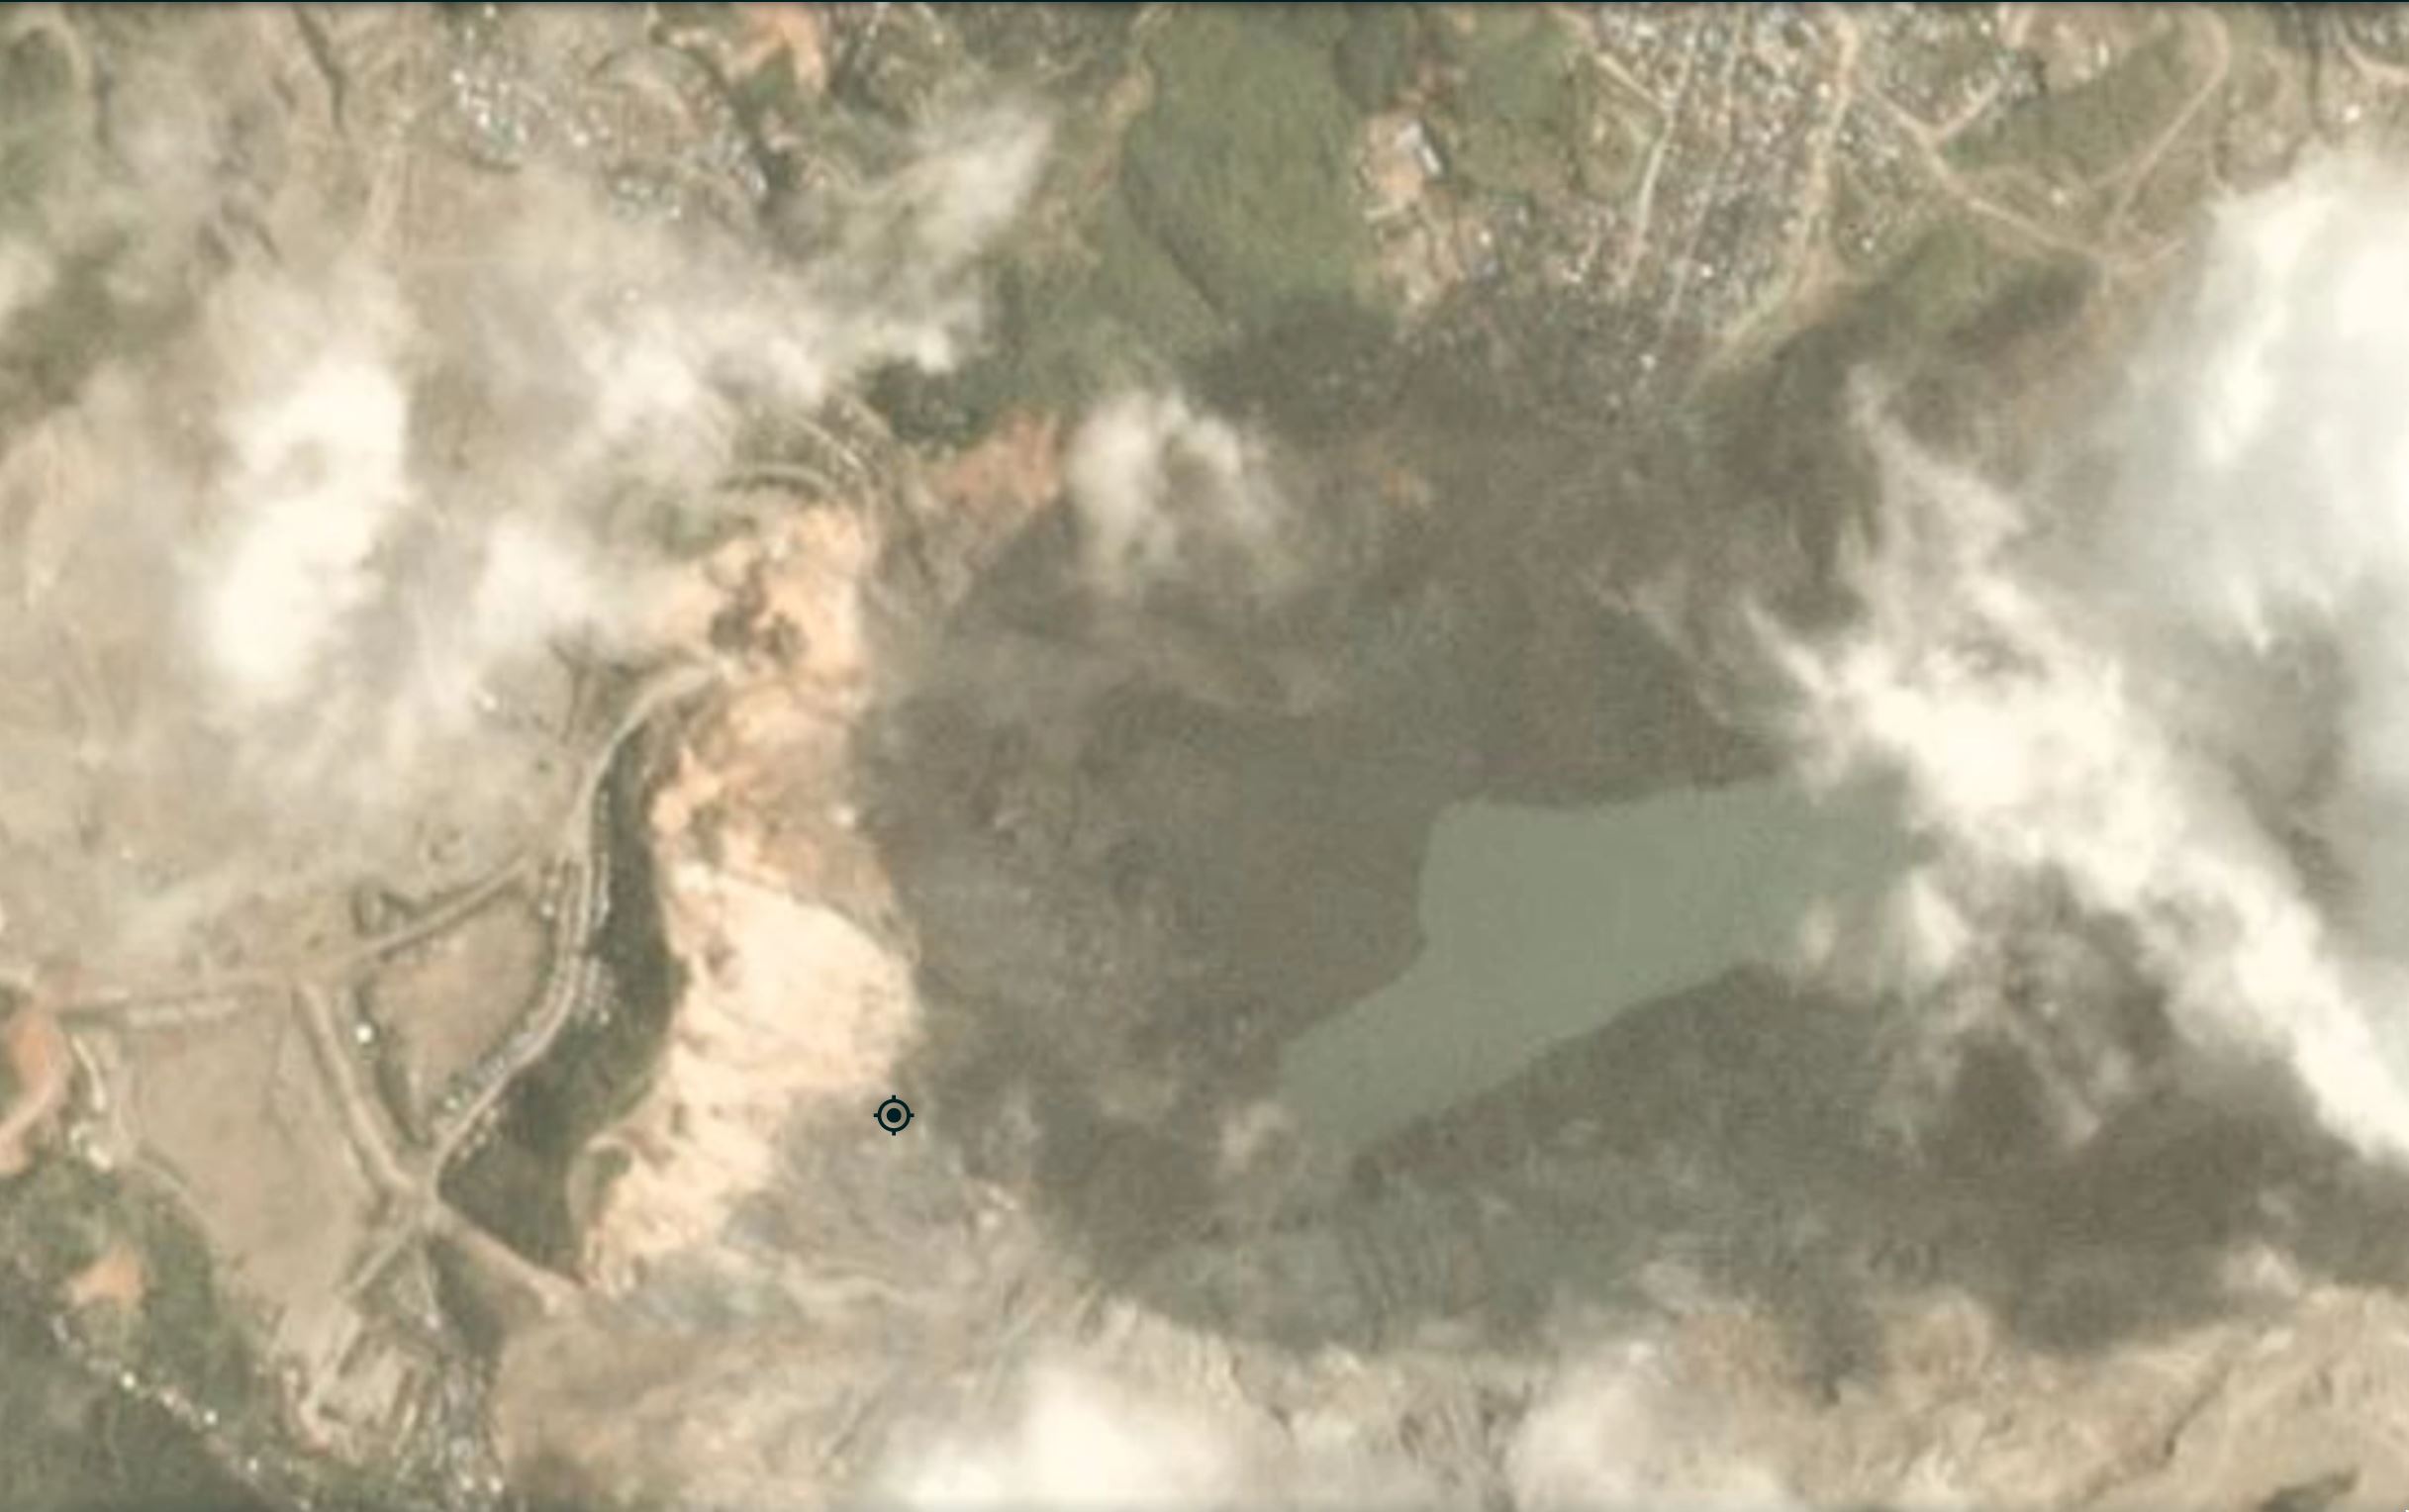  28 June 2020 Myanmar Jade mine landslide